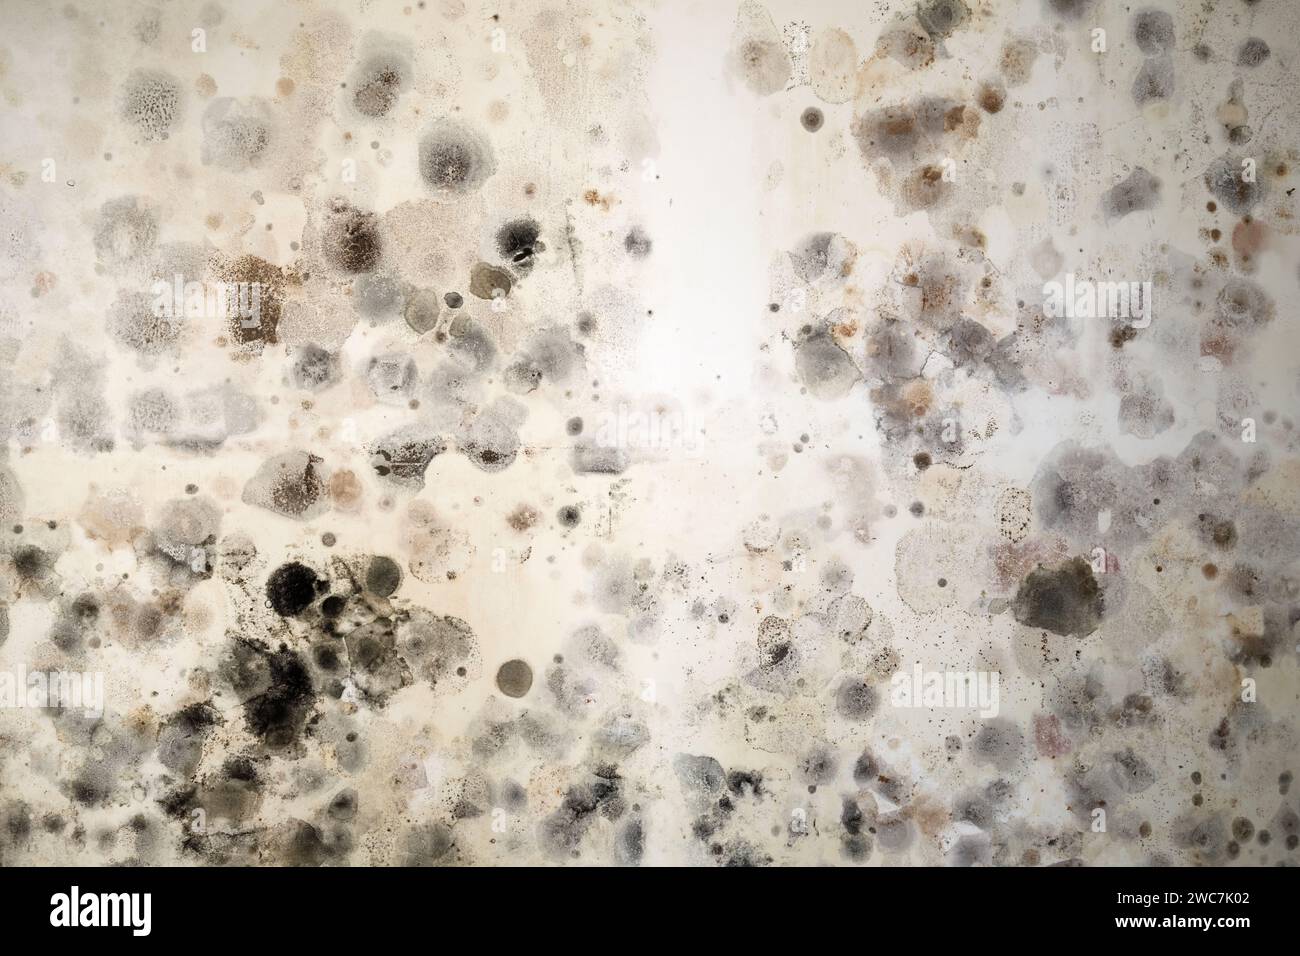 Giftiger schwarzer Schimmel Stachybotrys Chartarum wächst an der Wand eines Hauses. Stockfoto